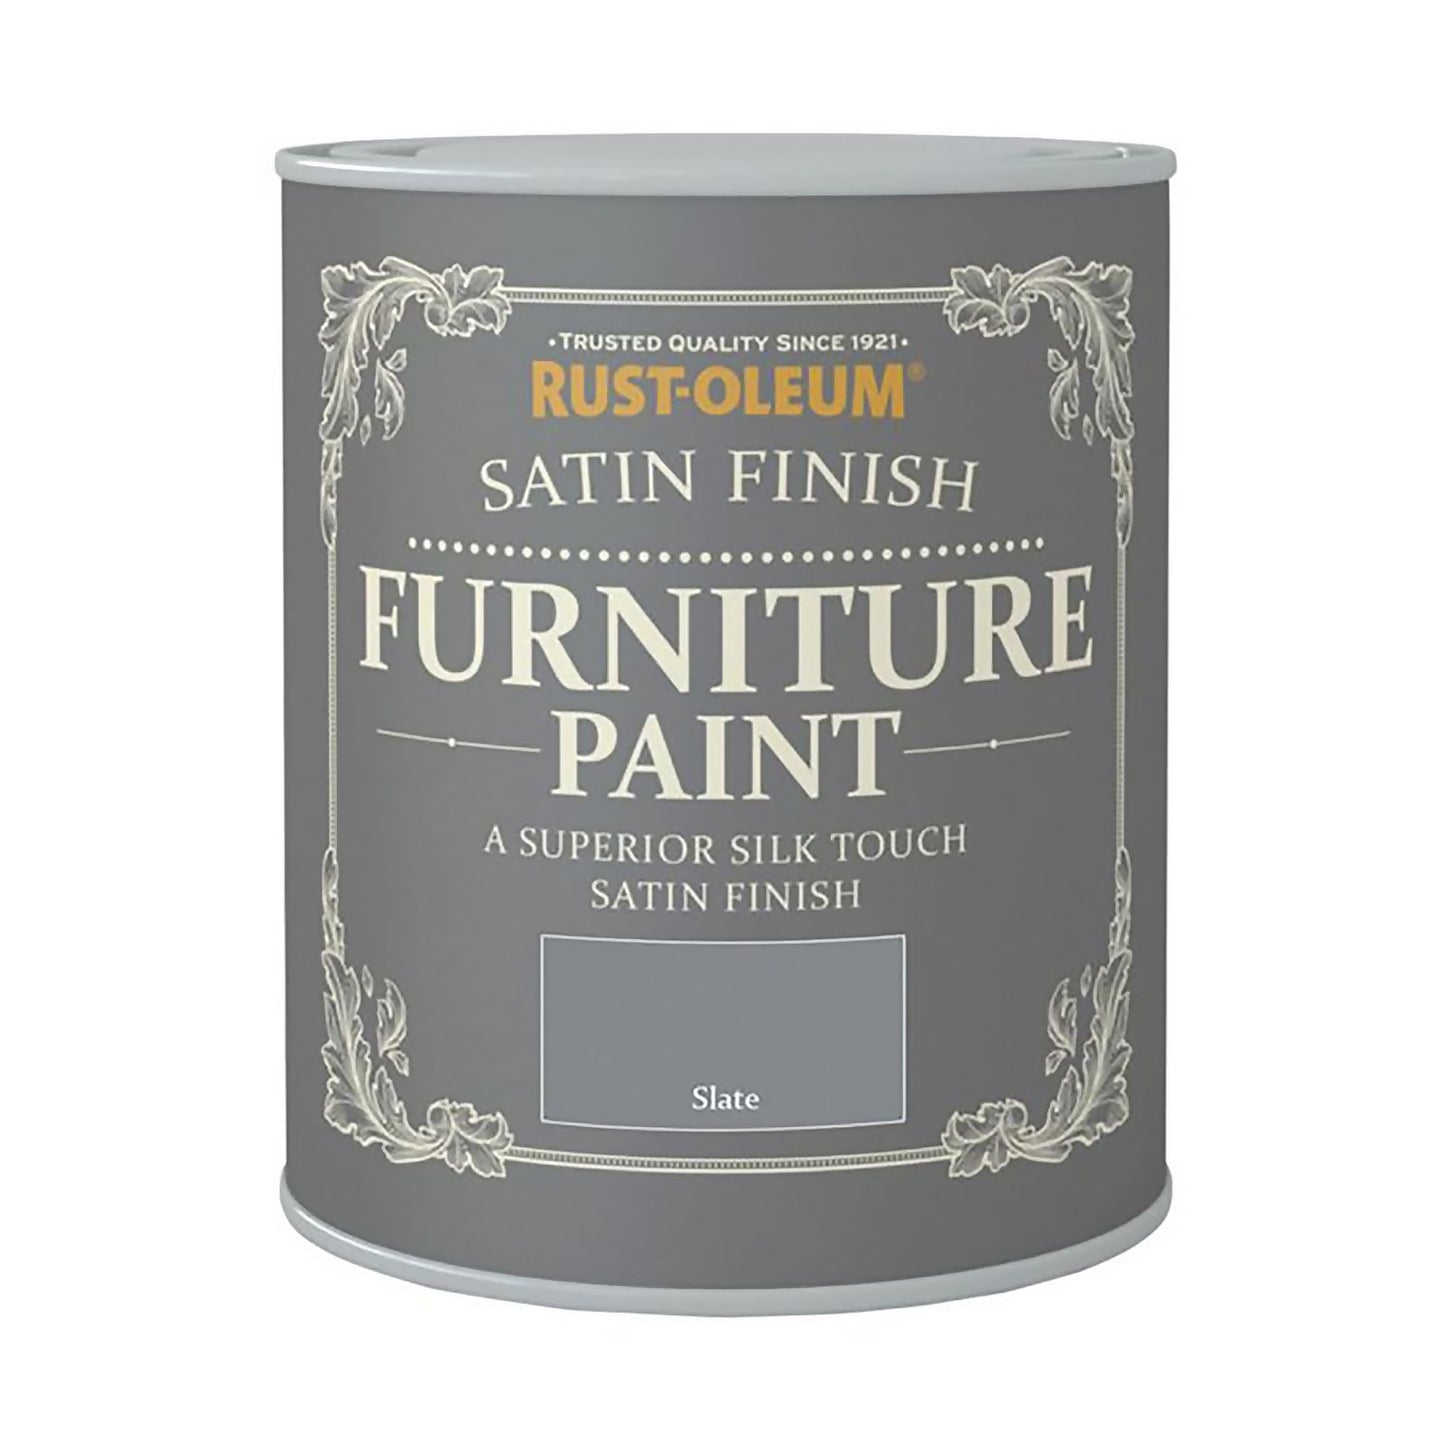 Rust-Oleum Satin Finish Furniture Paint Slate